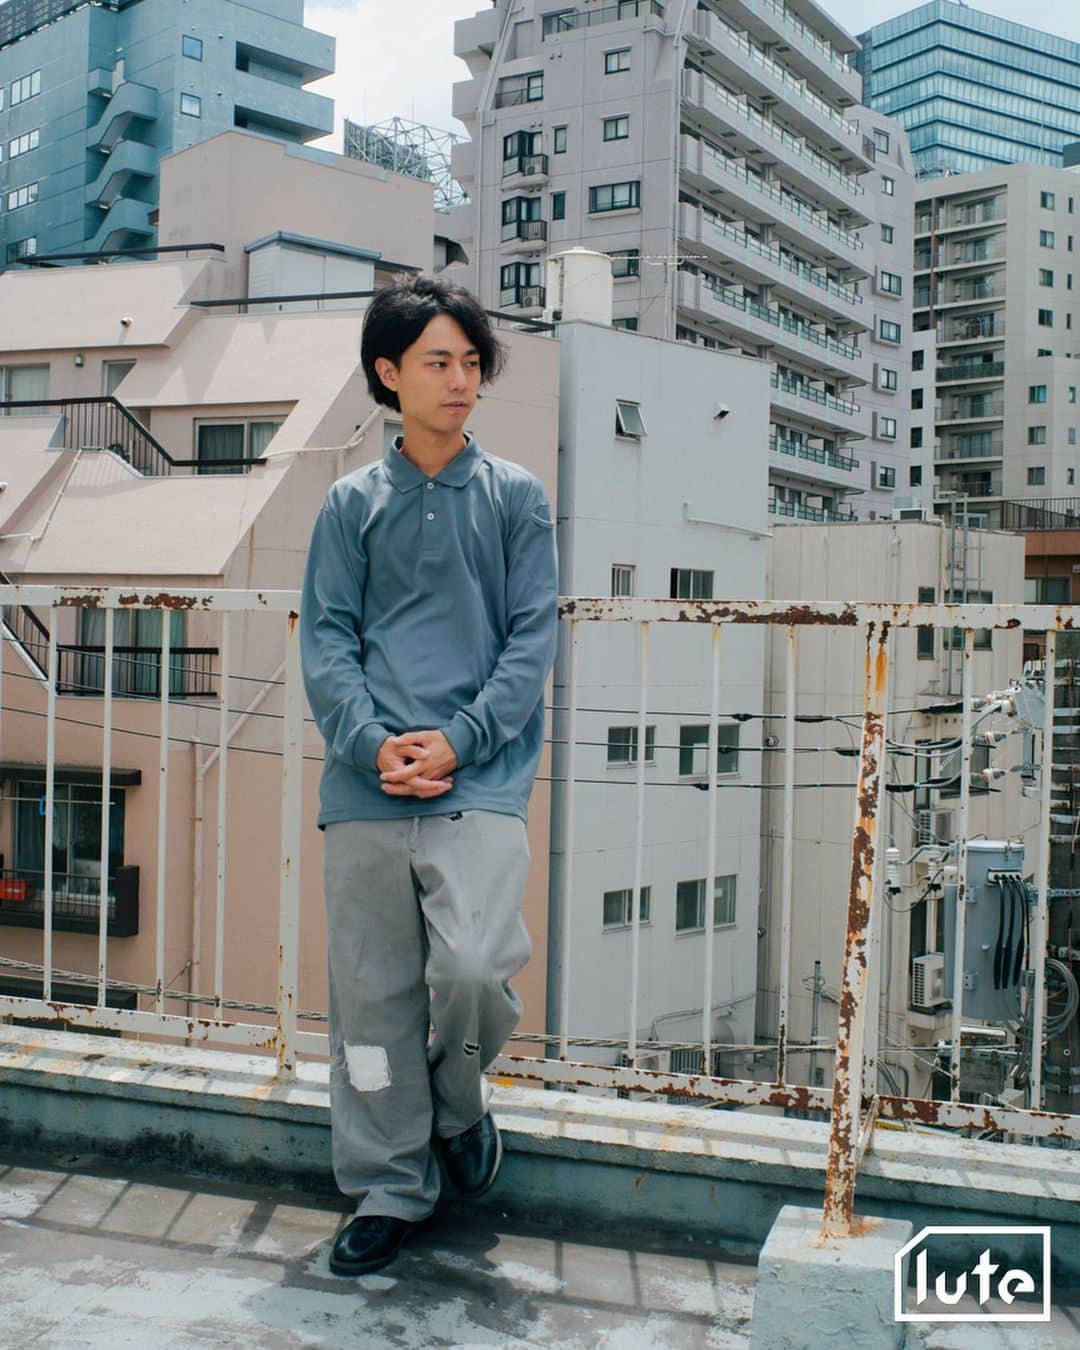 lute / ルーテさんのインスタグラム写真 - (lute / ルーテInstagram)「Interview with Nobuki Akiyama ( @nobukiakiyama ) Occupation：音楽家  Q. 最近どんな音楽を聞いてる？  ambient, BECK, Radiohead, Elliott Smith  Q. 音楽に目覚めたきっかけは？  小学校の鼓笛隊、教会音楽、TVで見かけたnobodyknows+。  Q. 自分の作品で一番のお気に入りは？  Under My Skin  Q. あなたにとって最高の一曲は？  たくさんありますが、今日はElliott Smith - Somebody That I Used To Know  Q. あなたにとって最高のアルバムは？  Radiohead - The Bends  Q. あなたにとって最高のアーティストは？  Damon Albarn  Q. 思い出に残っているフェス体験は？  Summer Sonicで見たPhoenix, LAのBeach Gothで見たDie Antwoord  Q. お気に入りのライブハウス、クラブはある？  Three, Basement Bar, Spread, Live Haus, Toonice, 騒音舎, Remy's, The Windmill   Q. 今注目しているアーティストは？  The Dare, Deadharrie, Home, banglang, Harry Teardrop, DAFTY RORN, Peterparkar69, a fungus, bar italia, feeble little horse  Q. 最近はどこで何して遊んでる？  家で模様替えしてます。コロナで寝込んでましたが元気になってきたのでスタジオでセッションしたい。  Q. コレクションしているものはある？  カセットテープ。  Q. 最近気になっている人物やプロジェクトとかある？  音楽は、上記の注目しているアーティストと同じ。その他では、上海の出版レーベル、Same Paperという媒体が気になっています。  Q. コラボしてみたいアーティストは？  Gorillaz, Diplo, cwondo  Q. お気に入りのMVを教えて！  The Strokes - 12:51  Q. 最近気になっているニュースや社会問題はある？  ジャニーズ性加害問題、水道民営化問題、ロシアのウクライナ侵攻  Q. 好きなクリエーターはいる？  M.I.A., Braulio Amado,   Q. クリエイティビティの源は？  音楽と生活。  Q. 5年後はどんな存在になっていたい？  もっと自由でいたい。  Photography : @sumiretamura   Special Thanks! Styling: @p_u_r_i_t_y_ty   音楽動画メディア「lute」によるインタビュー企画「IN TOWN」✍️アーティストやクリエイターのインサイドをストリートから配信📷」9月14日 17時35分 - lutemedia